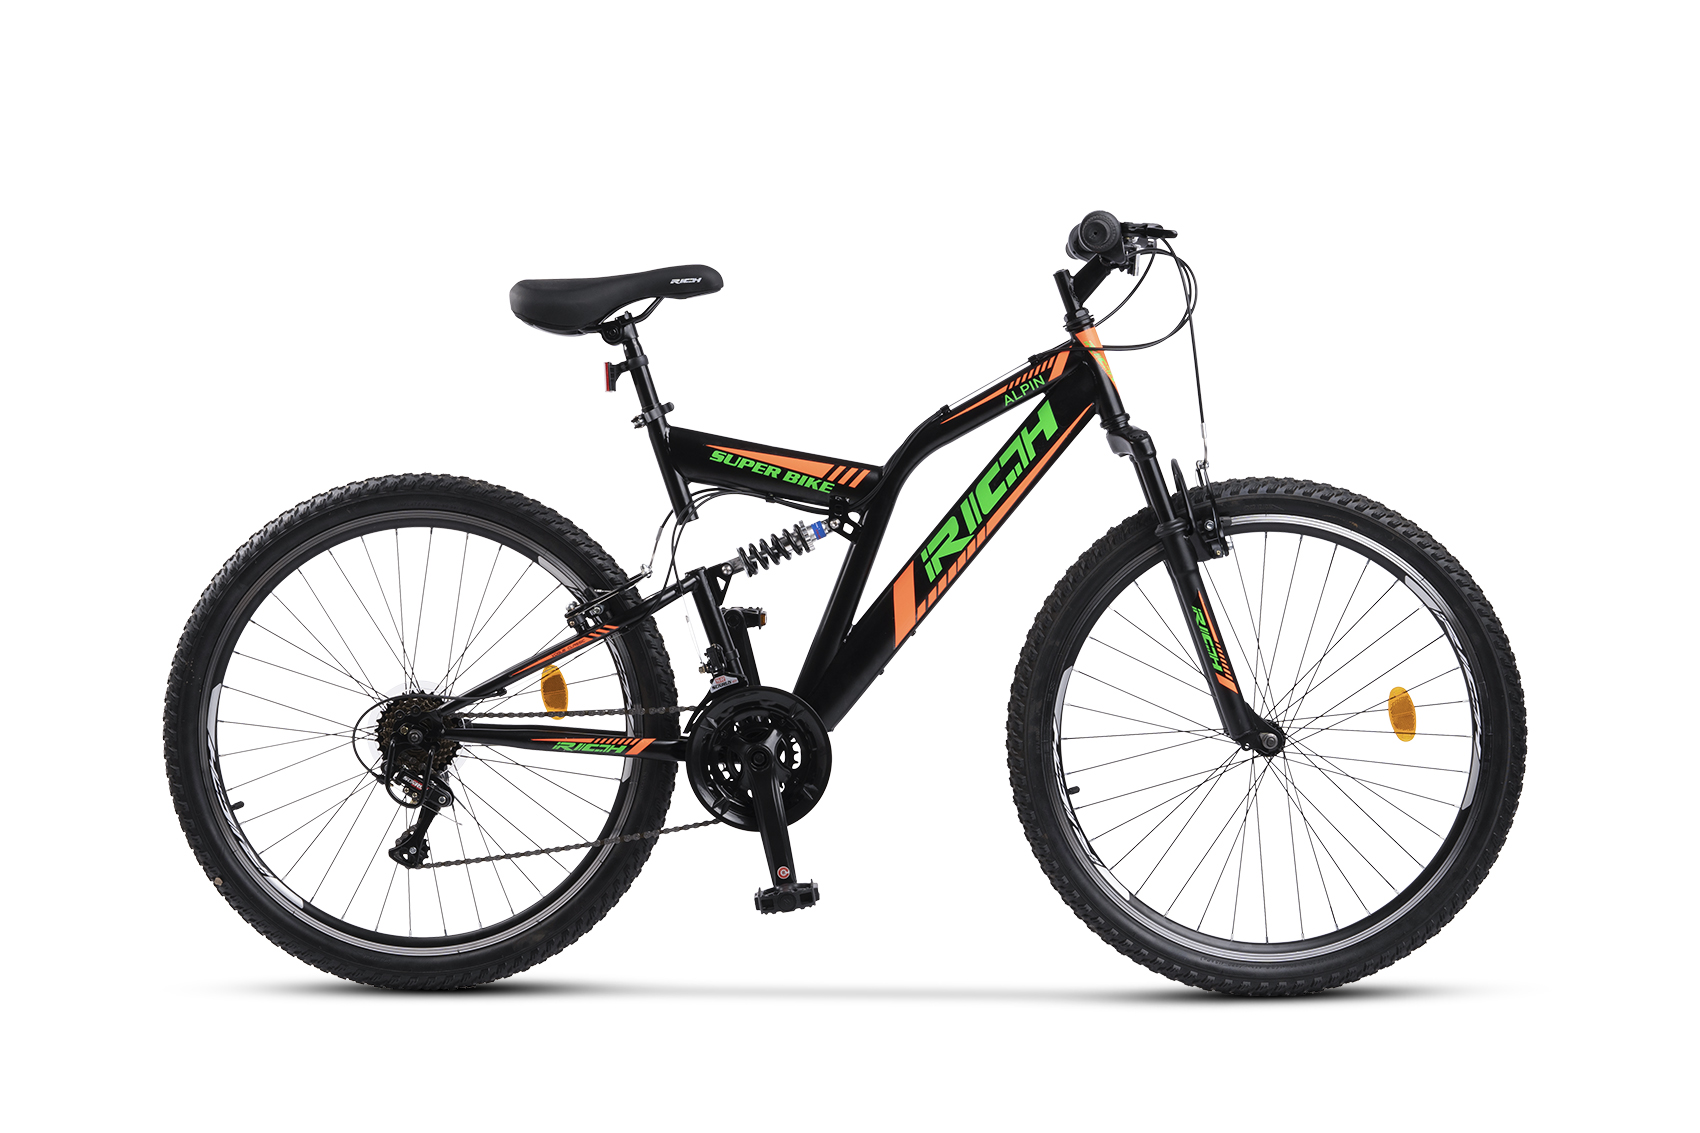 BICICLETE DE MUNTE - Bicicleta MTB-Full Suspension Rich R2649A, Sunrun 21 Viteze, Roti 26 Inch, Frane V-Brake, Negru/Verde/Portocaliu, https:carpatsport.ro